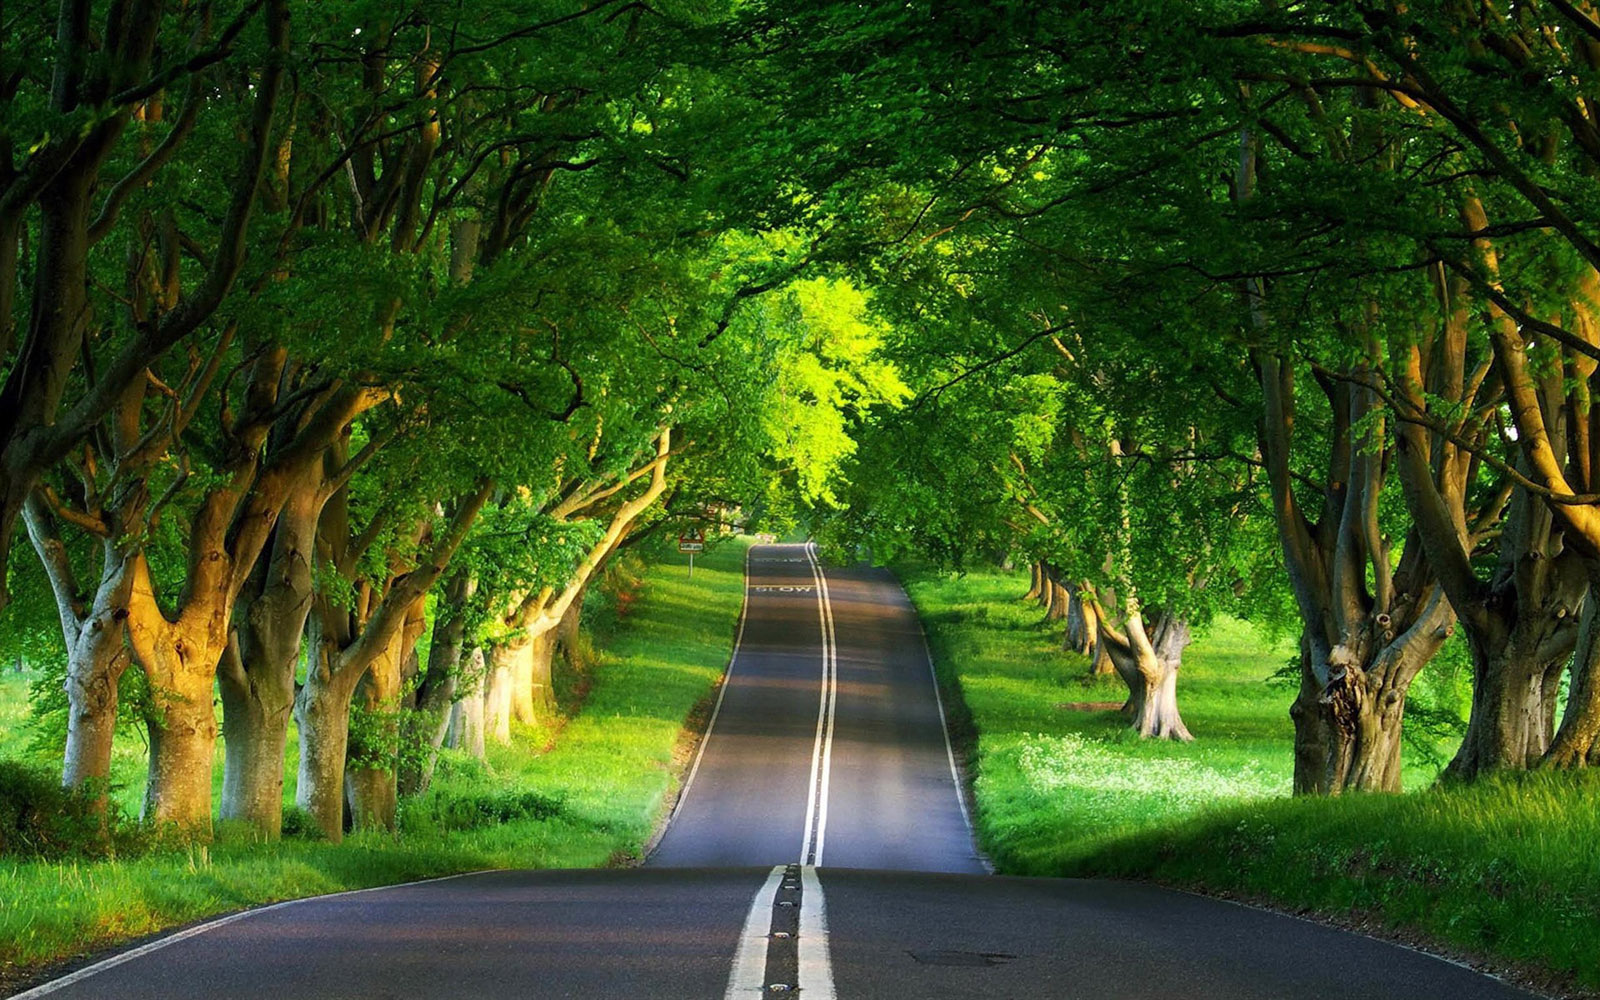 Download Cool Beautiful Nature Road Wallpaper | Full HD Wallpapers